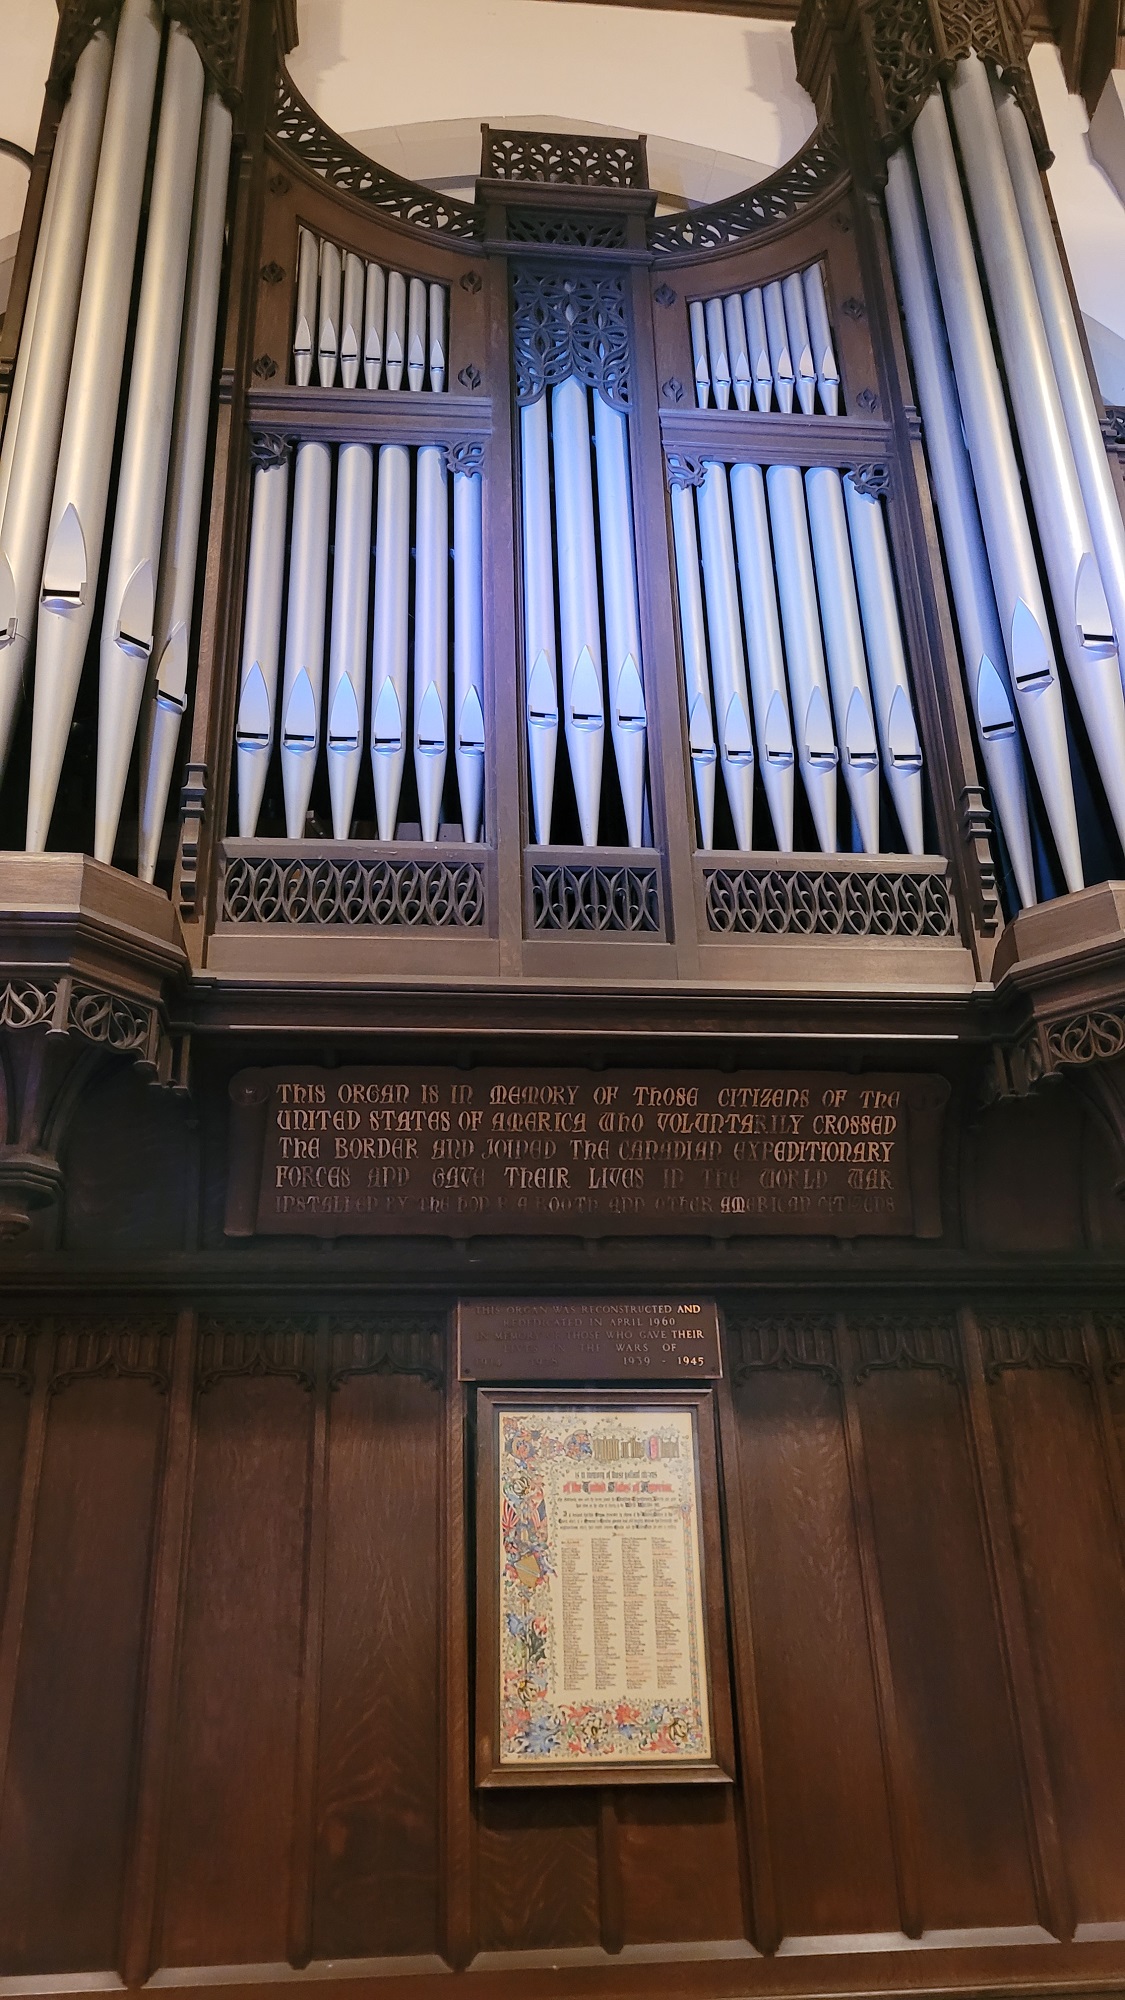 Inscription du côté droit des tuyaux de l’orgue du Souvenir.